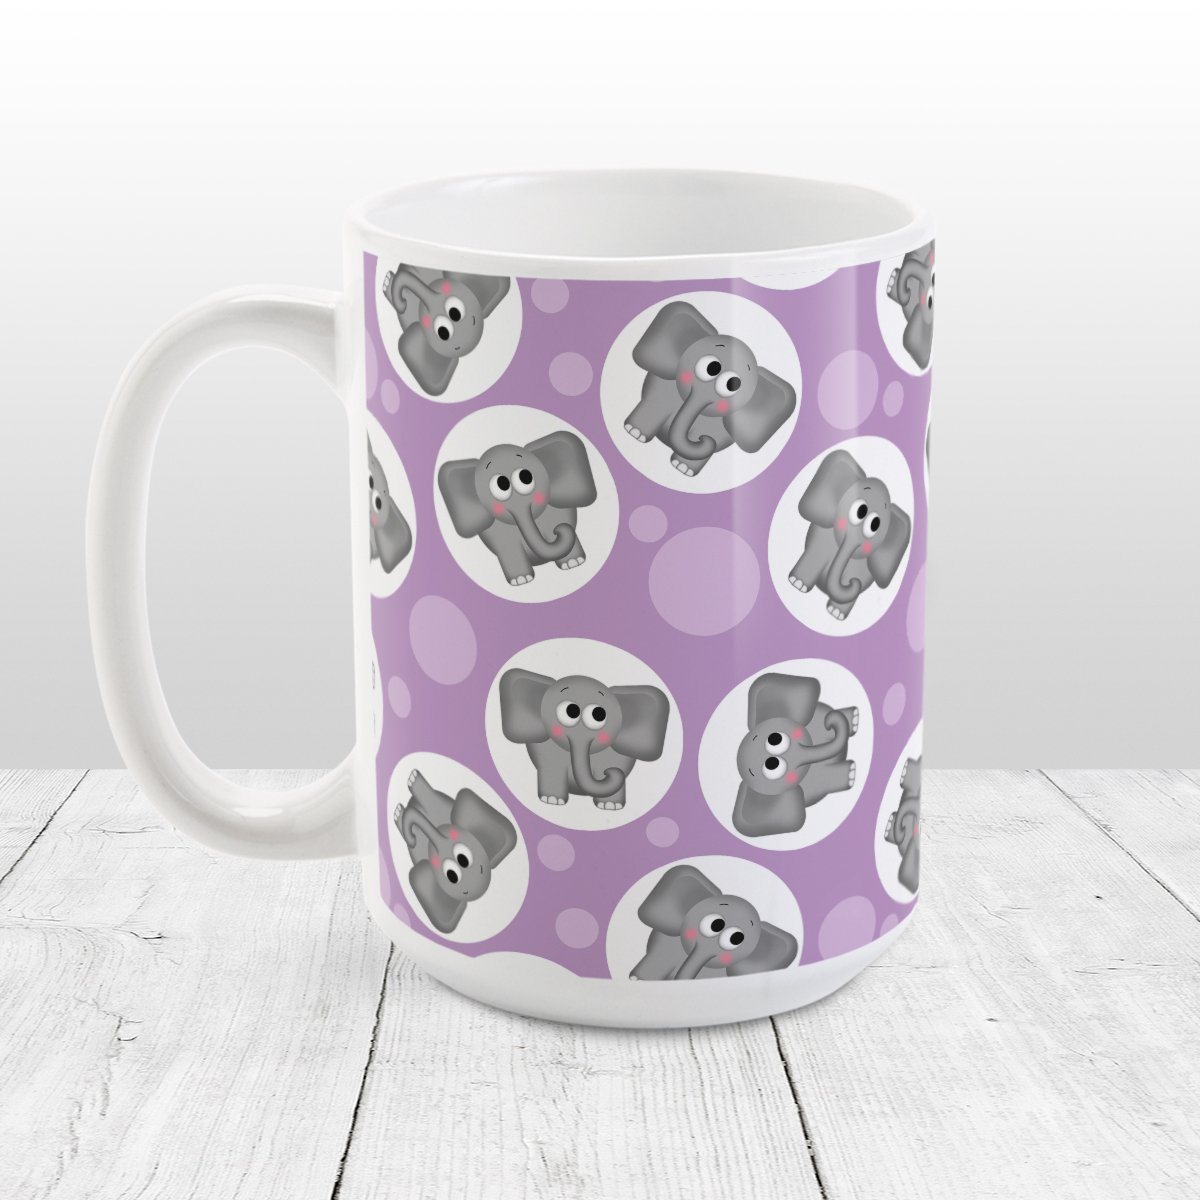 Cute Elephant Pattern Purple Mug at Amy's Coffee Mugs